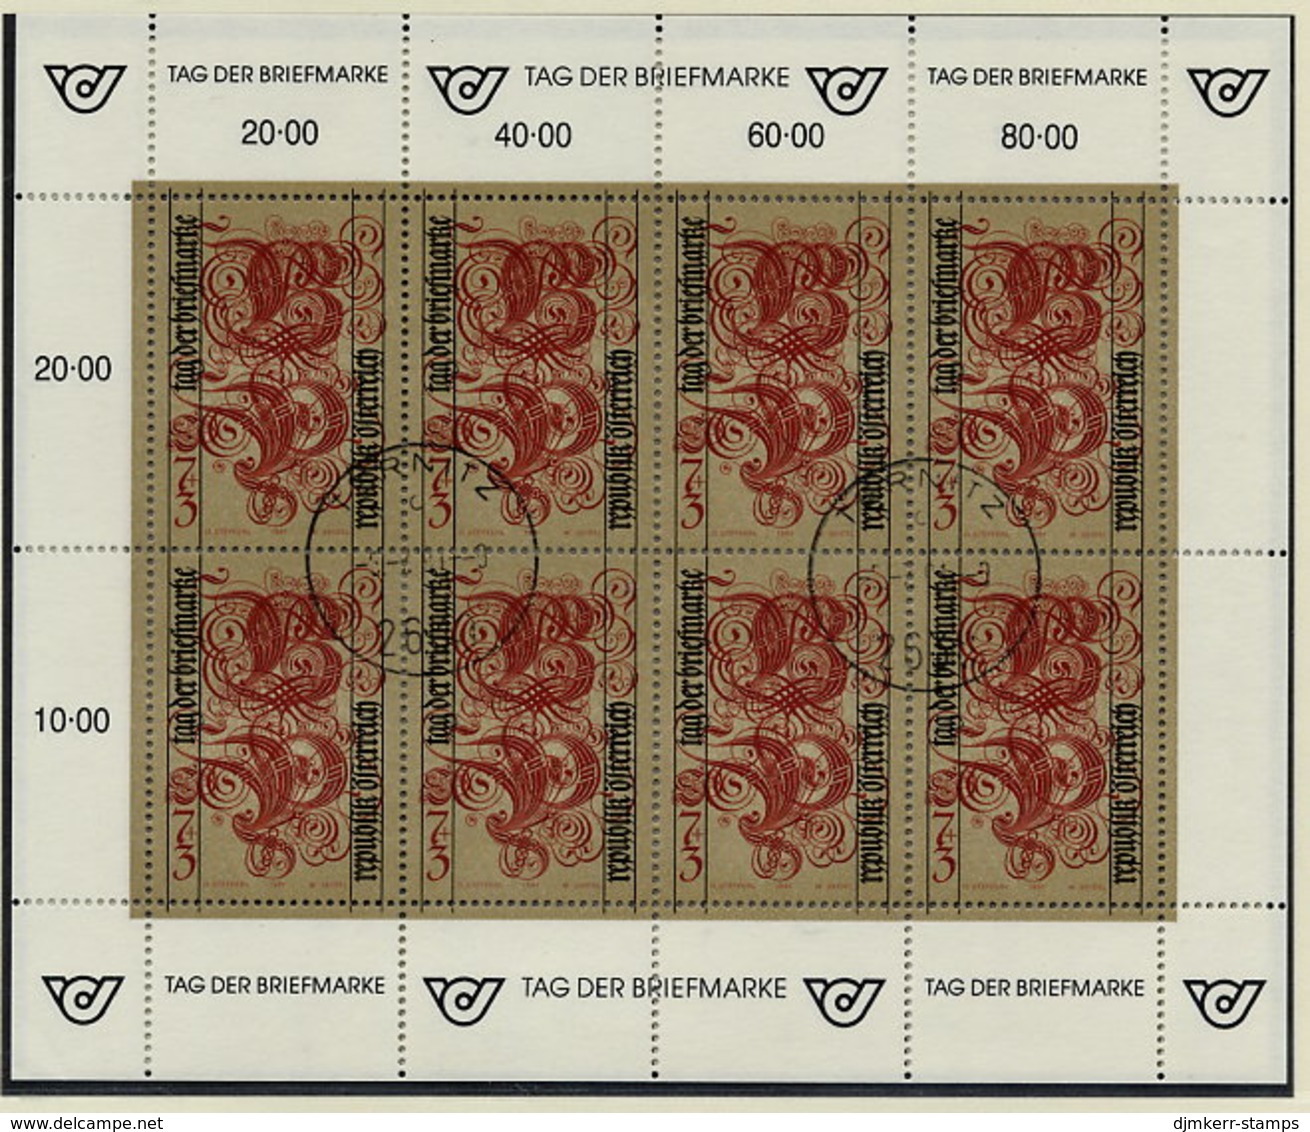 AUSTRIA 1991 Stamp Day Sheetlet, Postally Used On Registered Card.  Michel 2032 Kb - Blocks & Kleinbögen